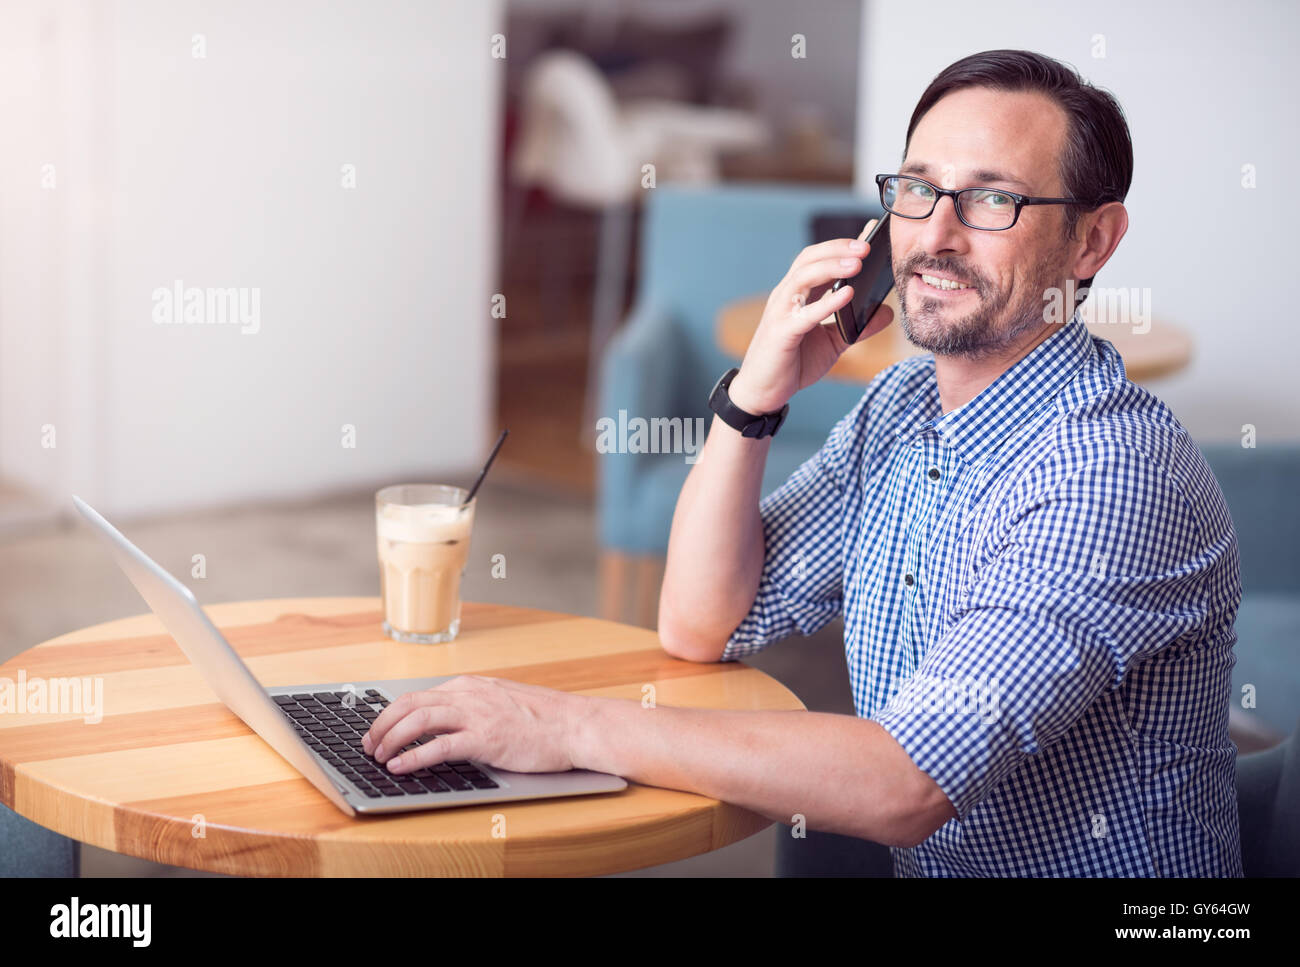 Nice hardworking man talking per phone Stock Photo